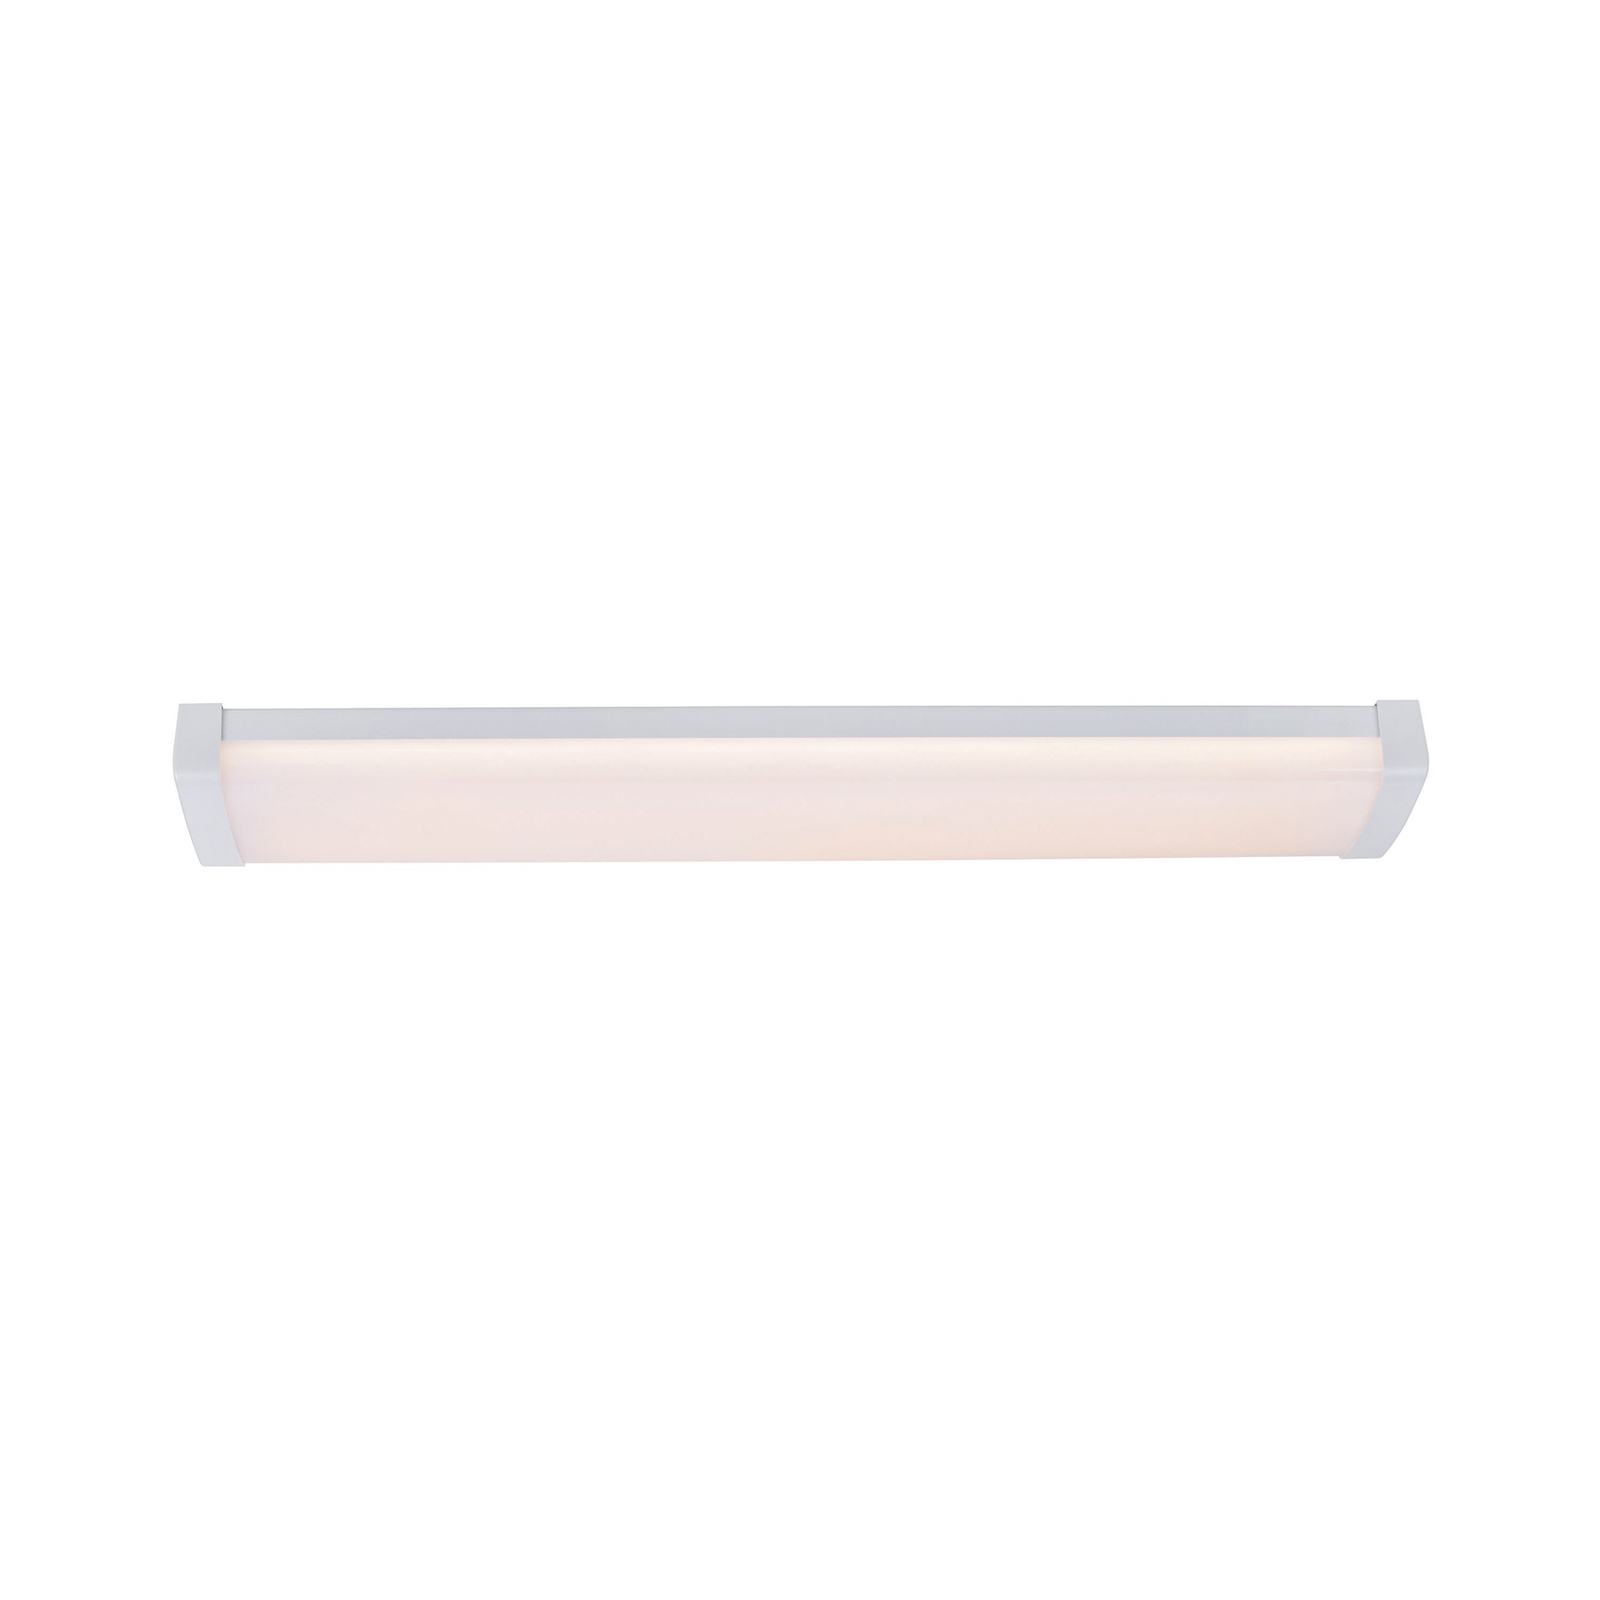 Wilmington LED batten light, length 60.5 cm, white, plastic